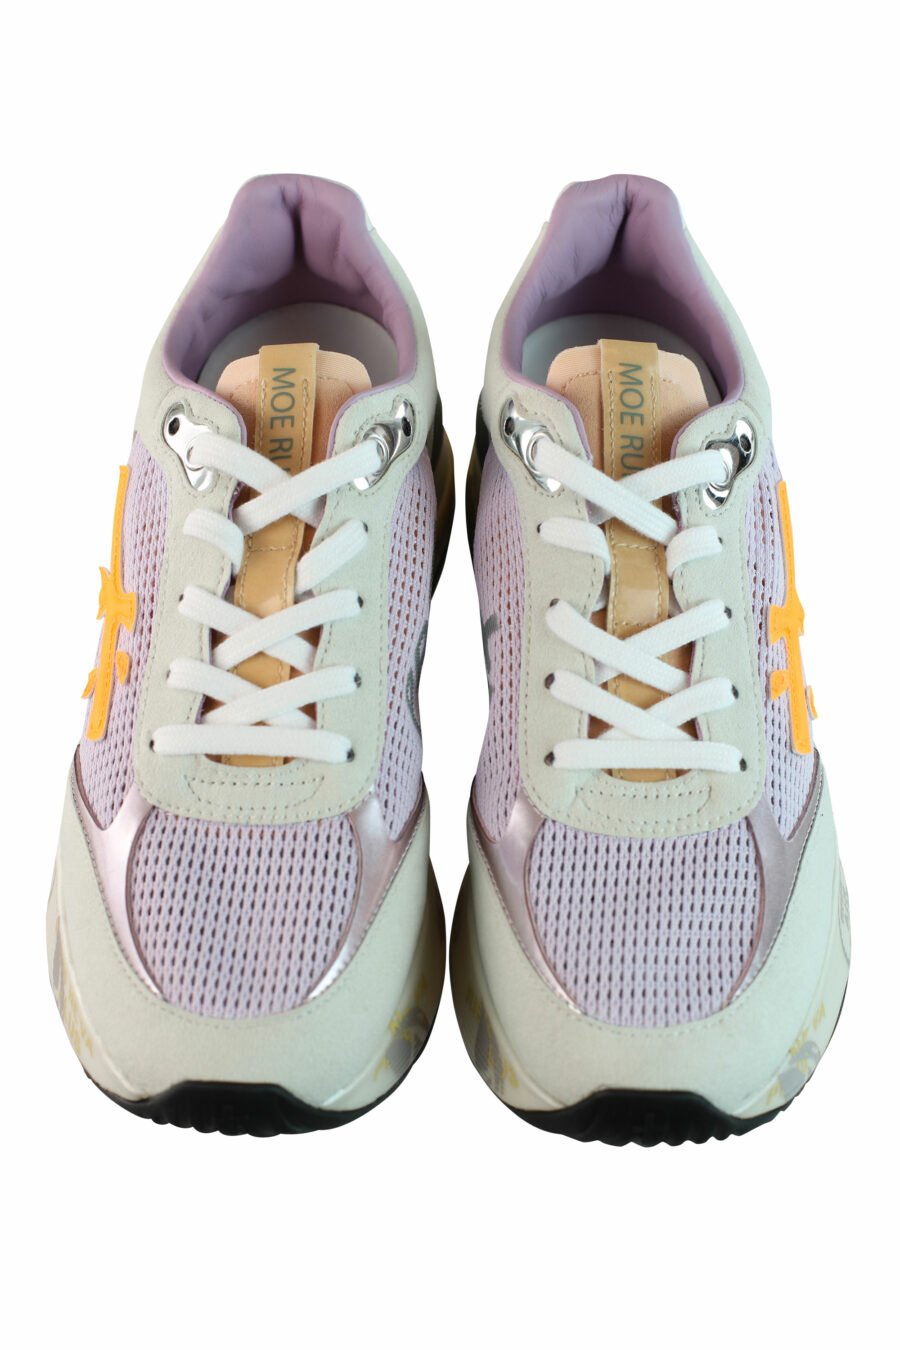 Zapatillas grises con lila y naranja "moe run-d 6337" - IMG 0844